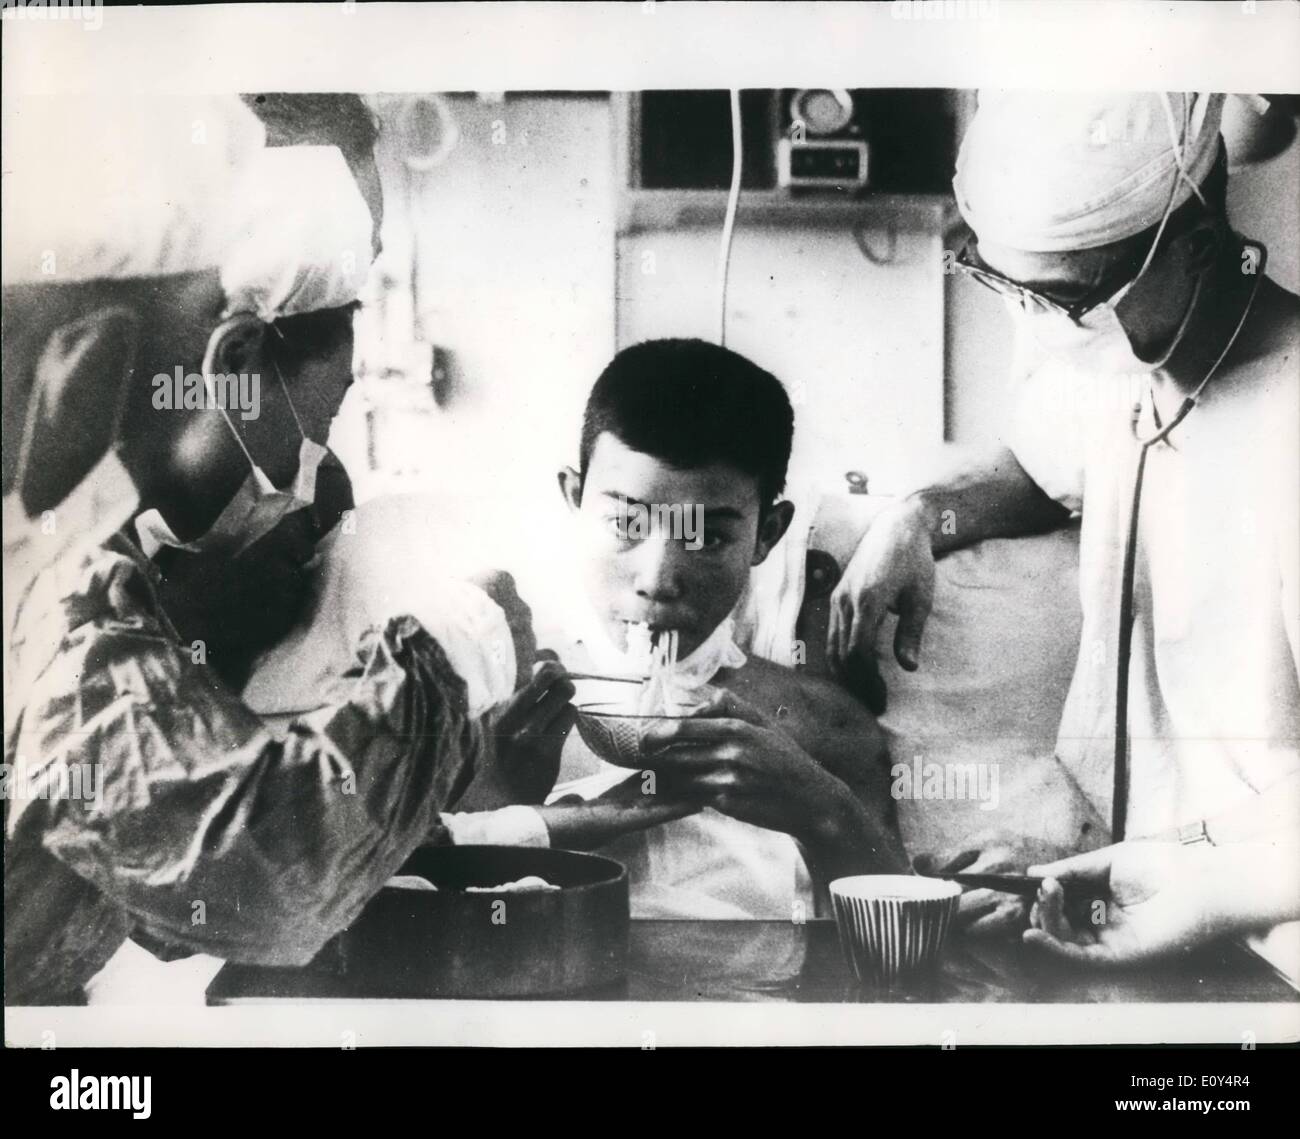 8. August 1968 - junge mit neuen Herz nochmaliges Klicken seine Stäbchen; Foto zeigt Nobuo Miyasaki, 18, Japans erste Herz-Transplantation Patient sieht man sein Frühstück sitzen auf einem Stuhl, zum ersten Mal seit der Operation vergangen. Er aß eine b Eule Reis Haferschleim, wurde einfügen, Suppe, ein Bratapfel, Rührei und gekochte Fischpaste und Milch am Medical College Hospital in Sapporo auf der Insel Hokkaido, Japans Northern die meisten Gebiet. Stockfoto